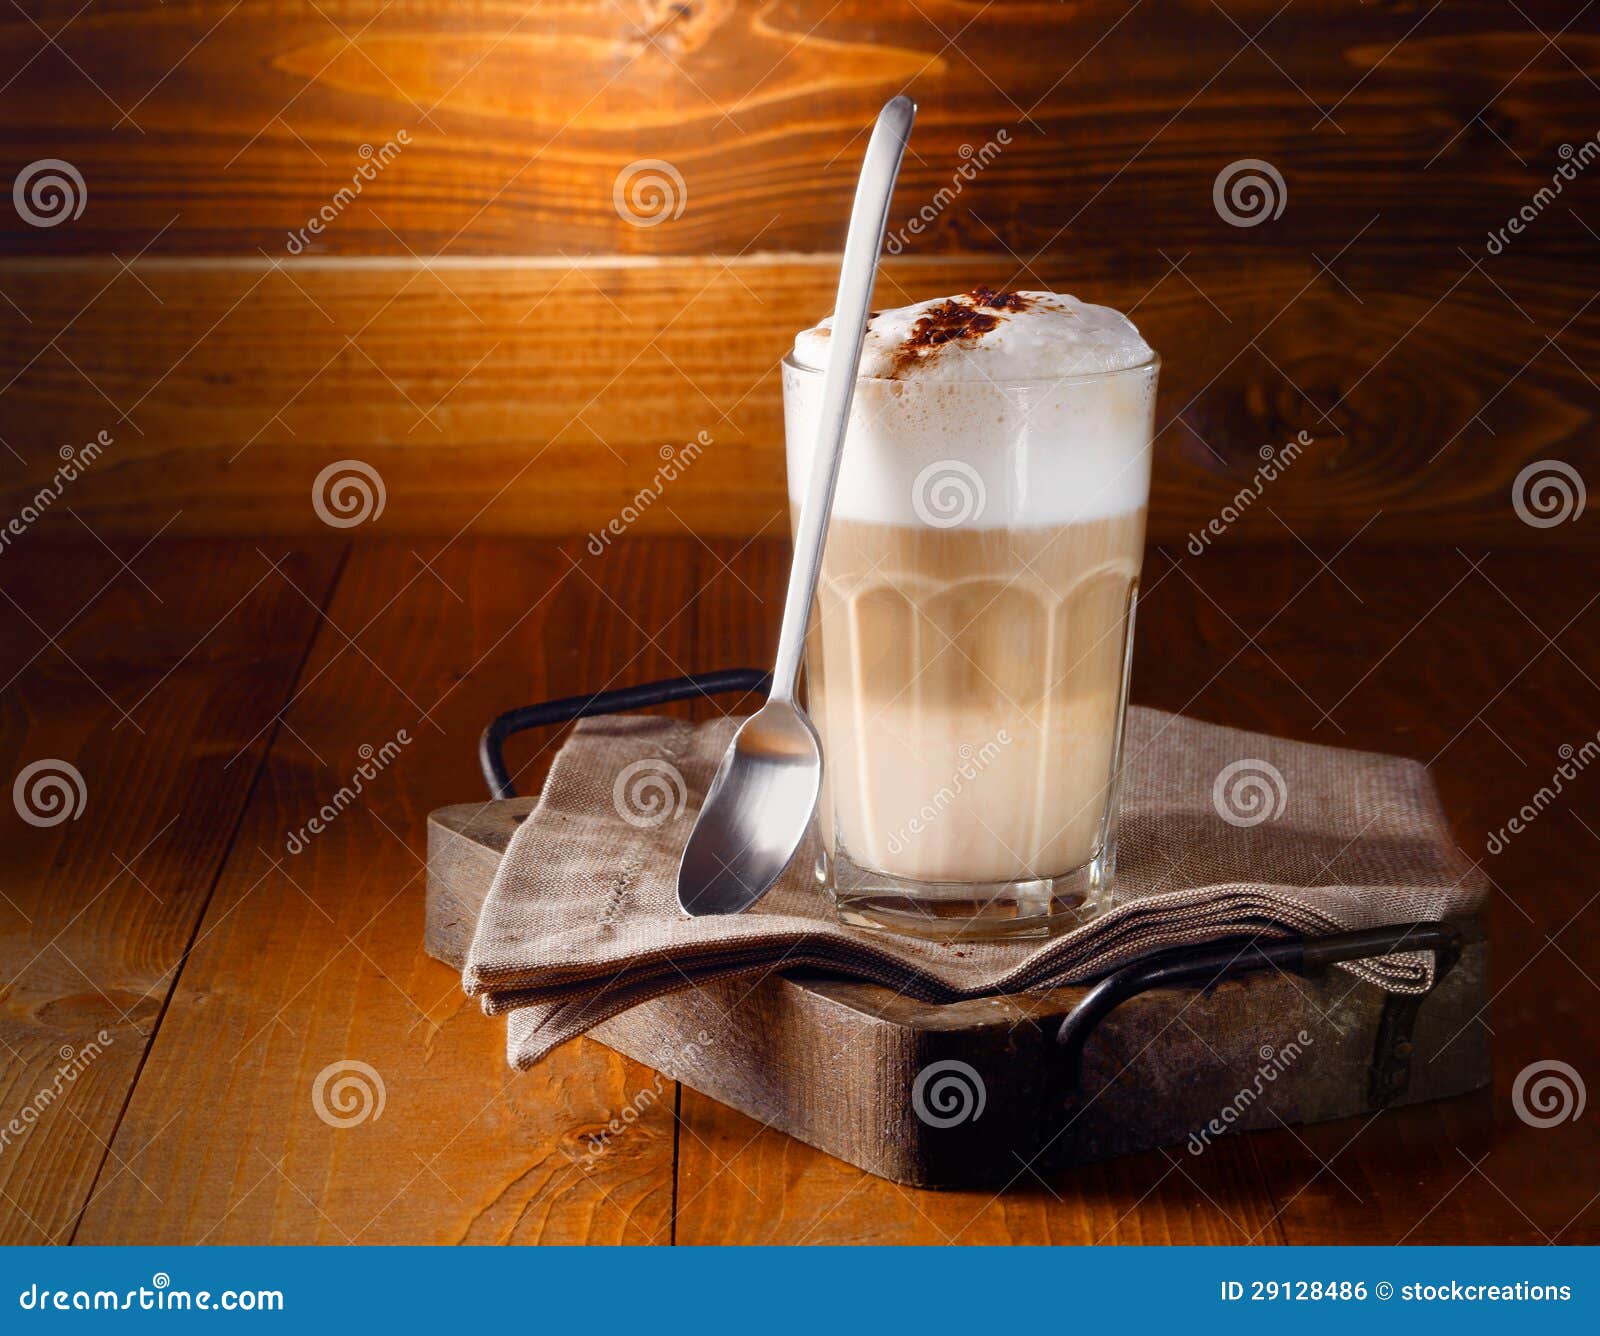 delicious layered latte macchiato coffee